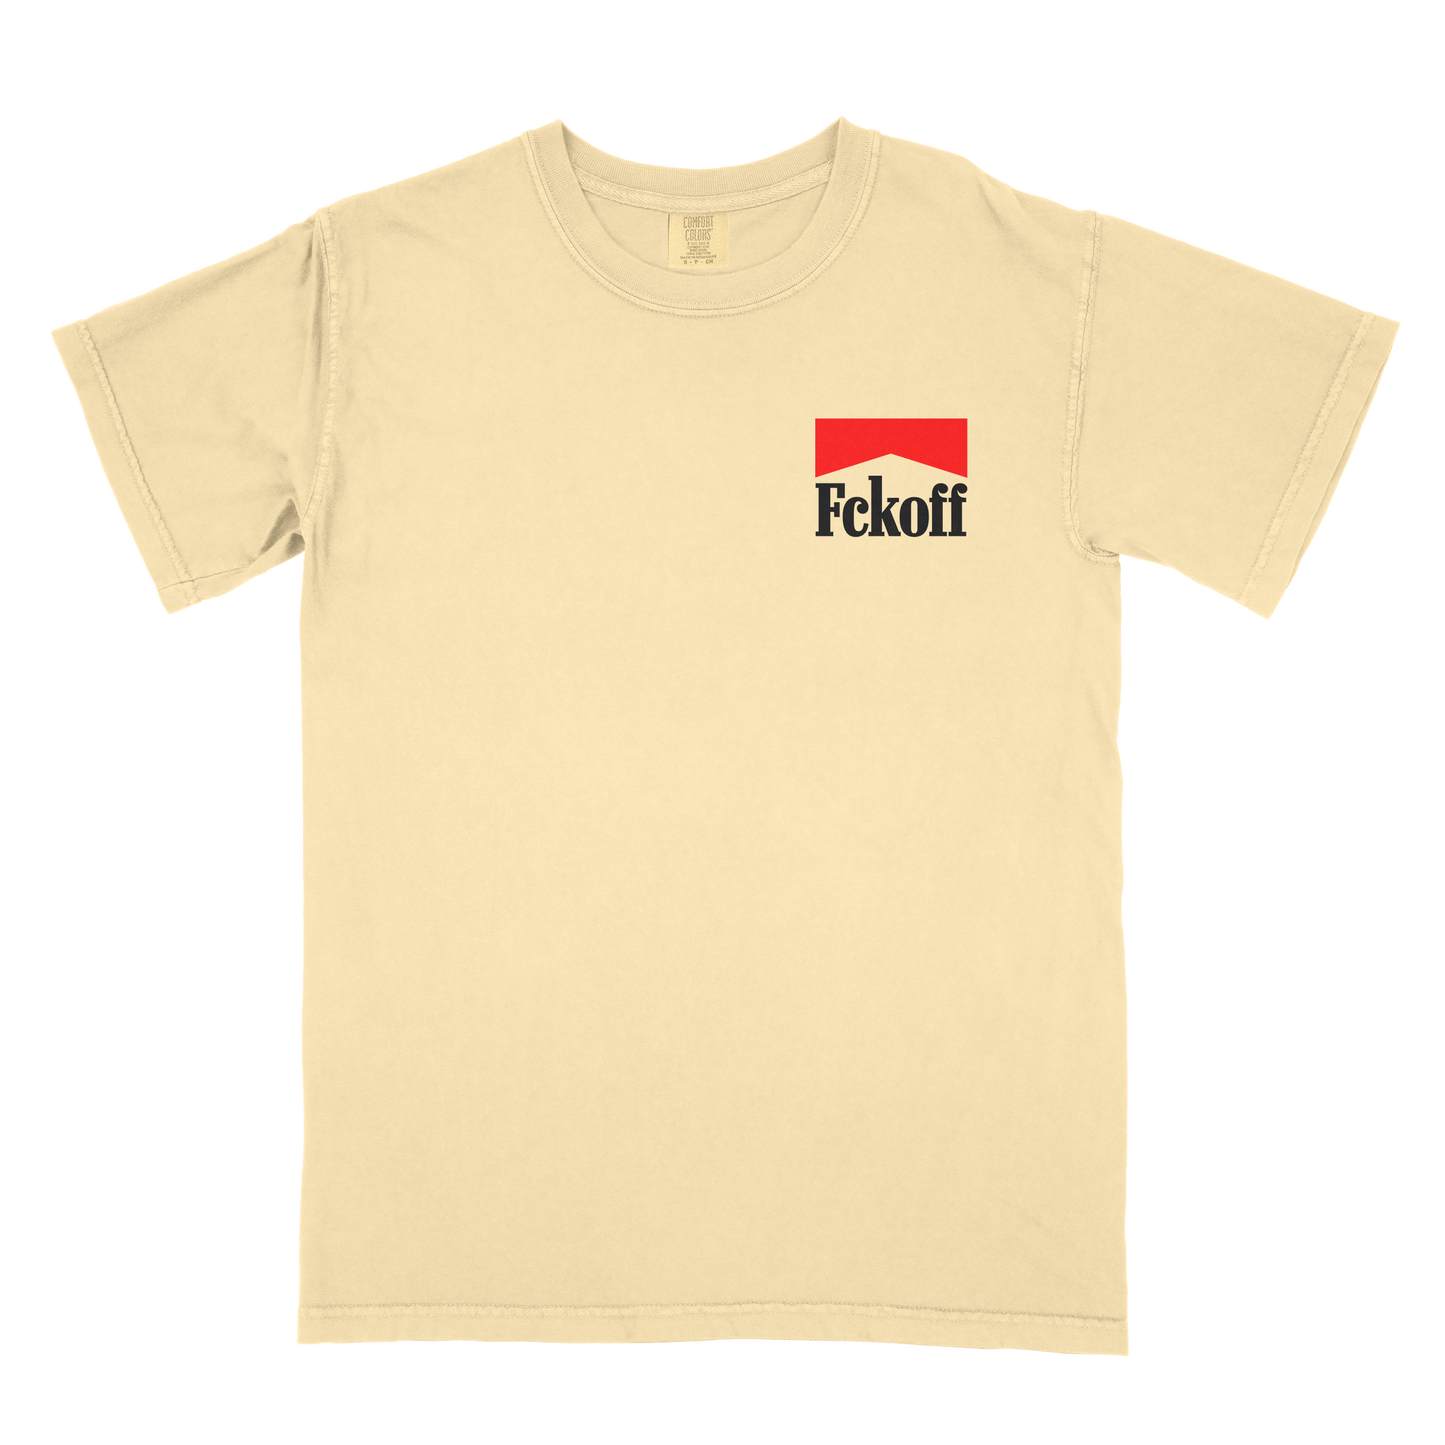 FCKOFF x Marb. T-Shirt (Tan)